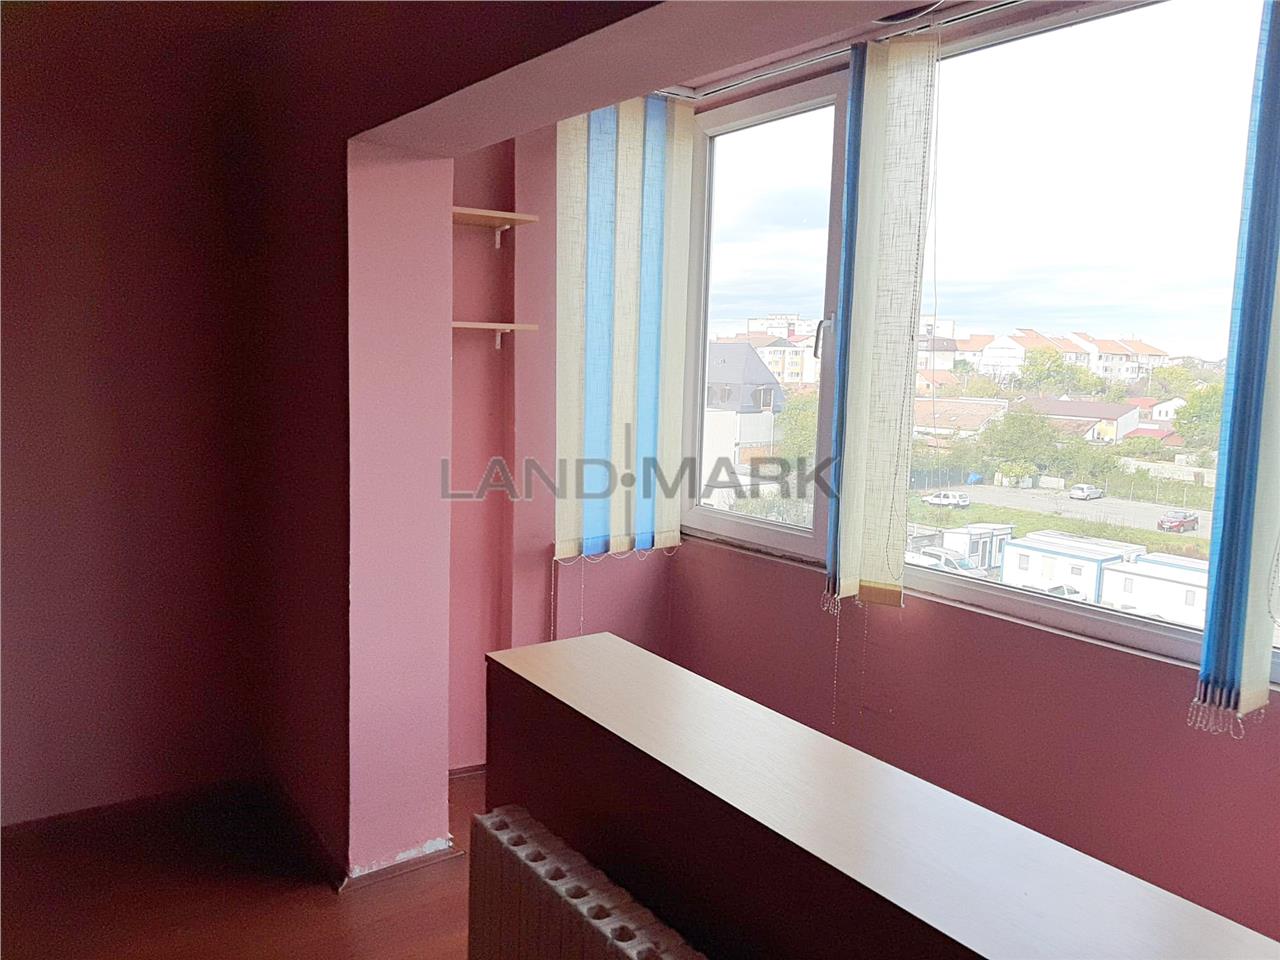 COMISION 0% Apartament cu 1 camera in zona Steaua  Int Petru